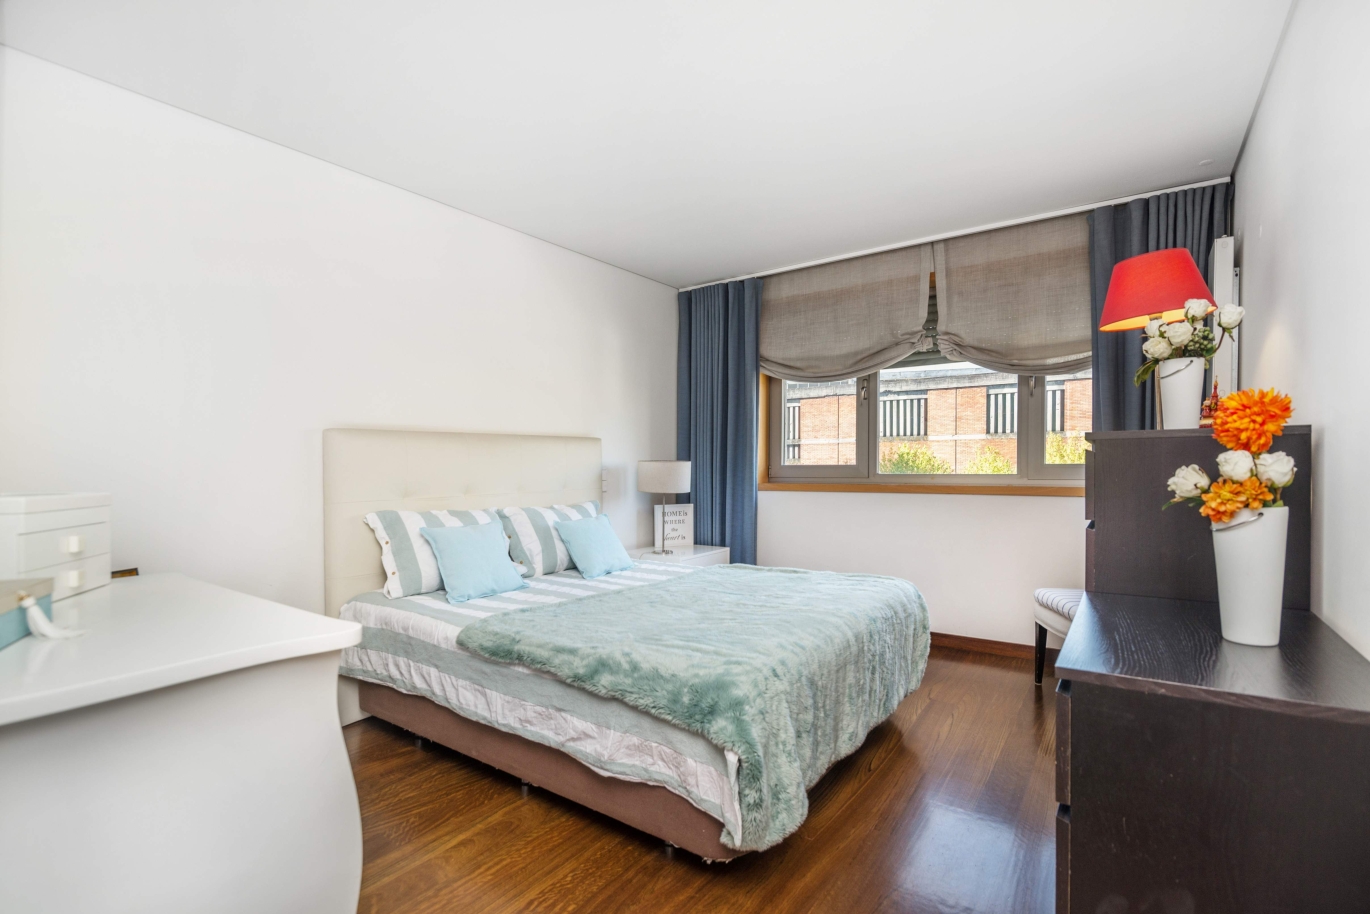 Venda apartamento em condomínio privado com vistas rio, Porto, Portugal_121038